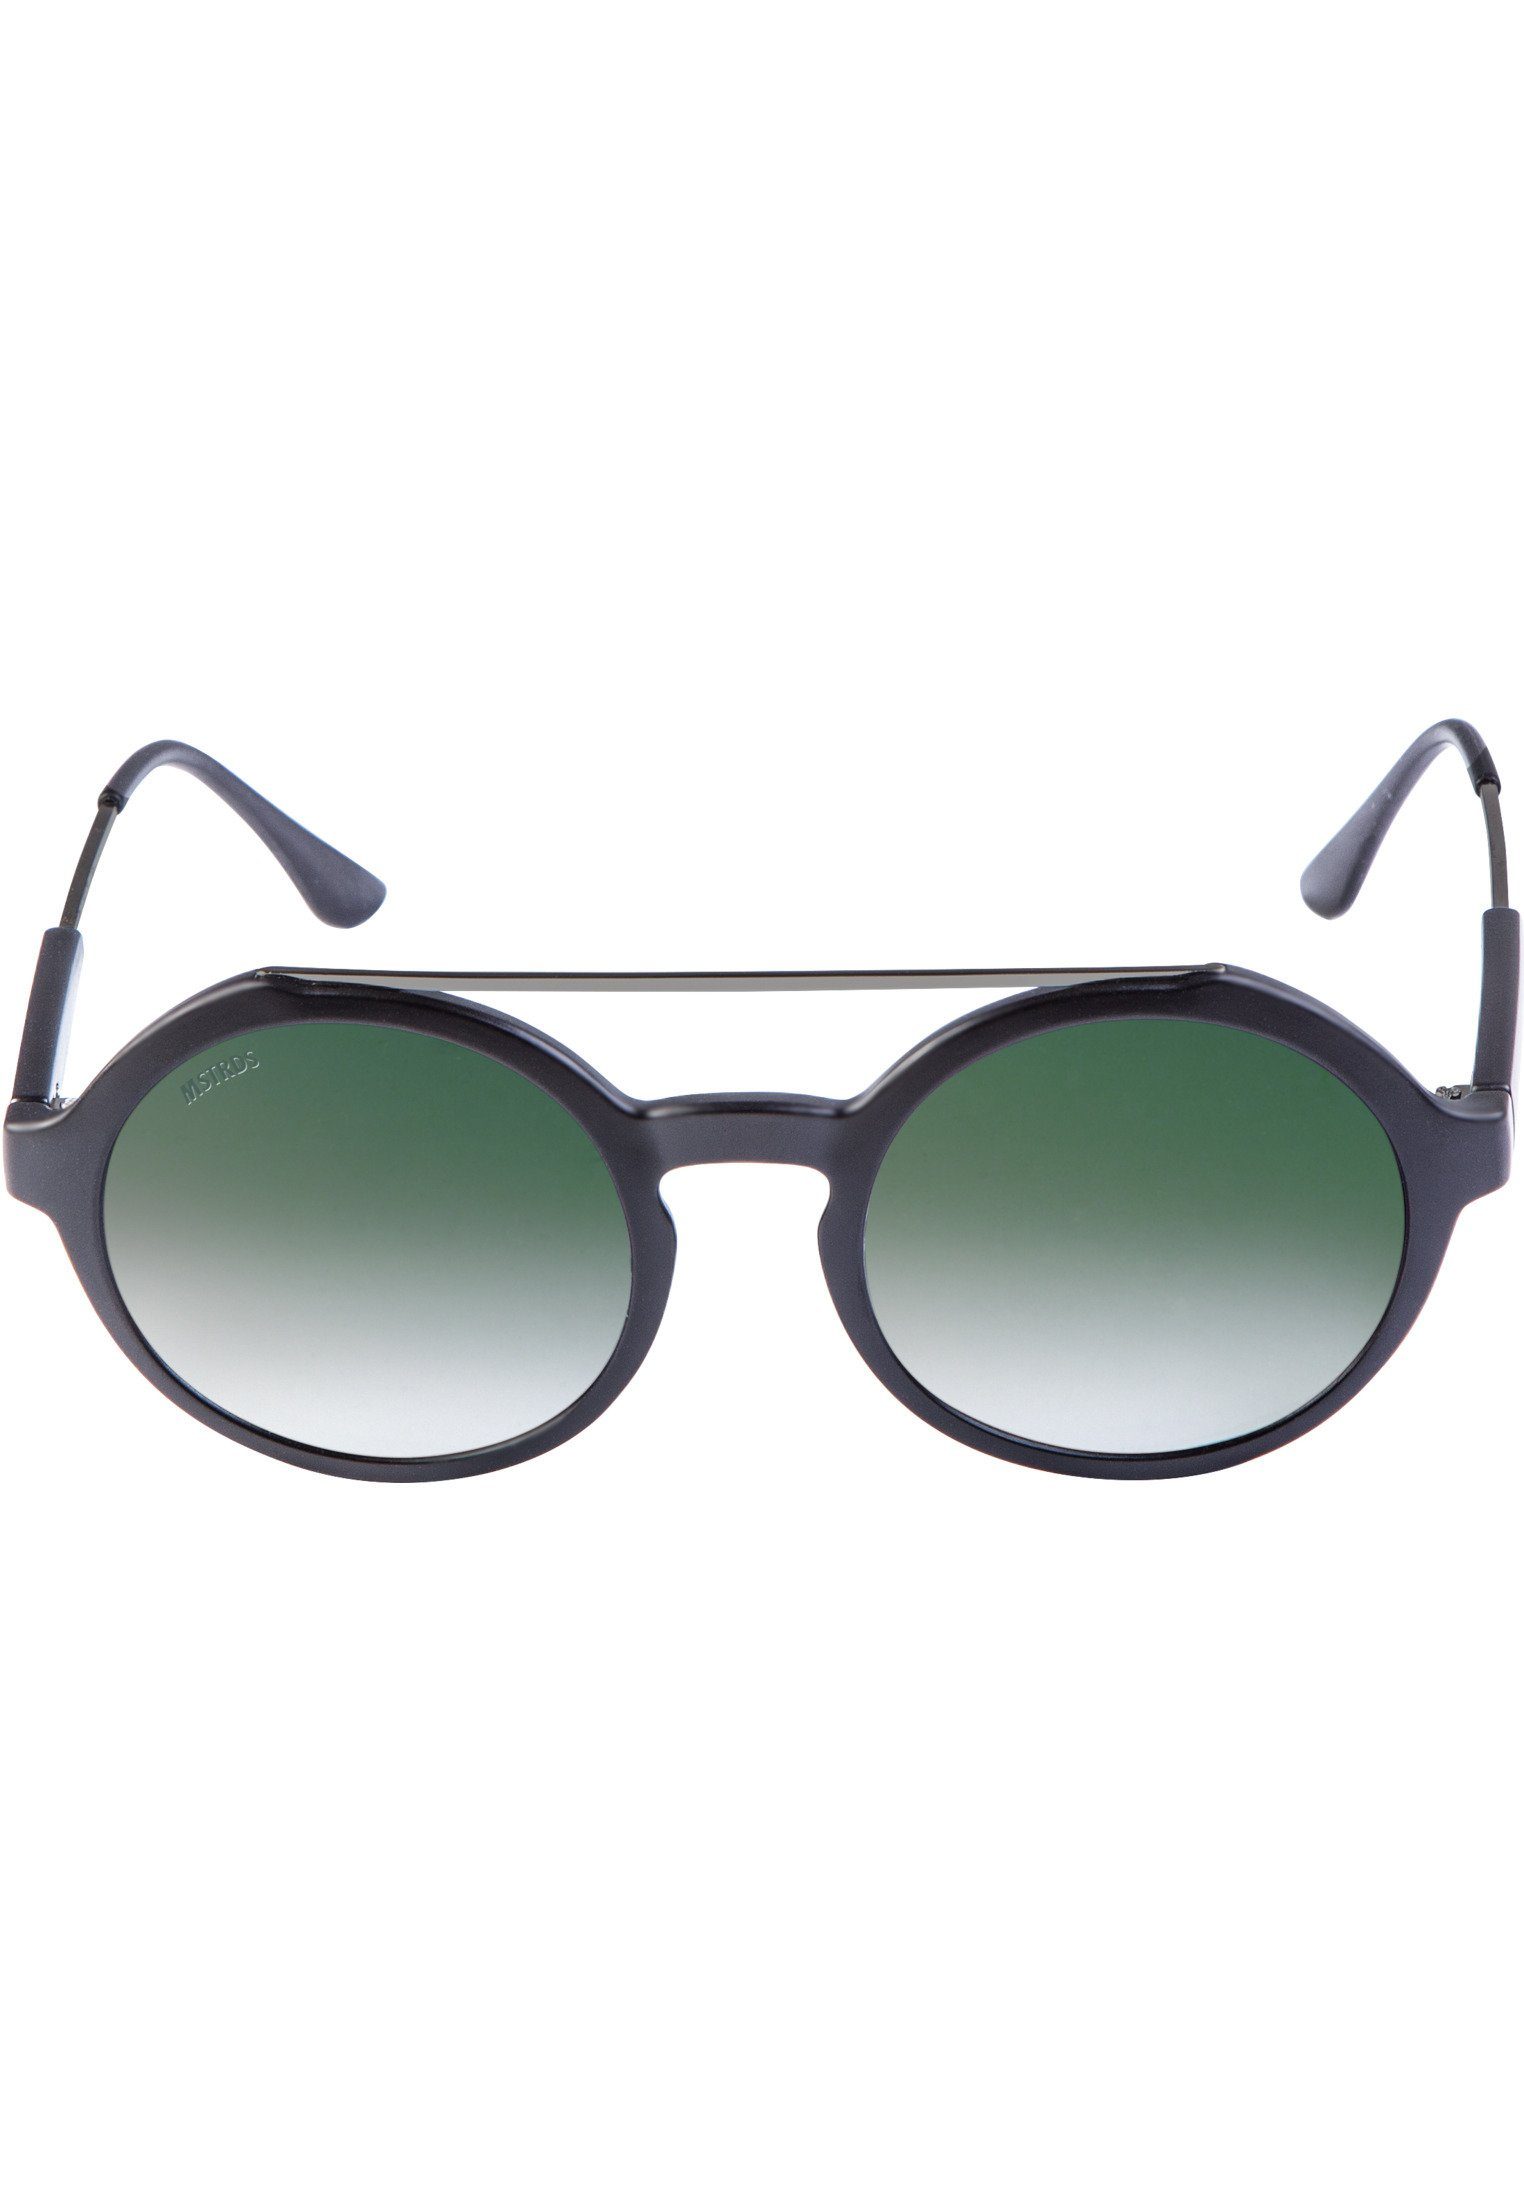 MSTRDS Sonnenbrille Accessoires Sunglasses Retro Space blk/grn